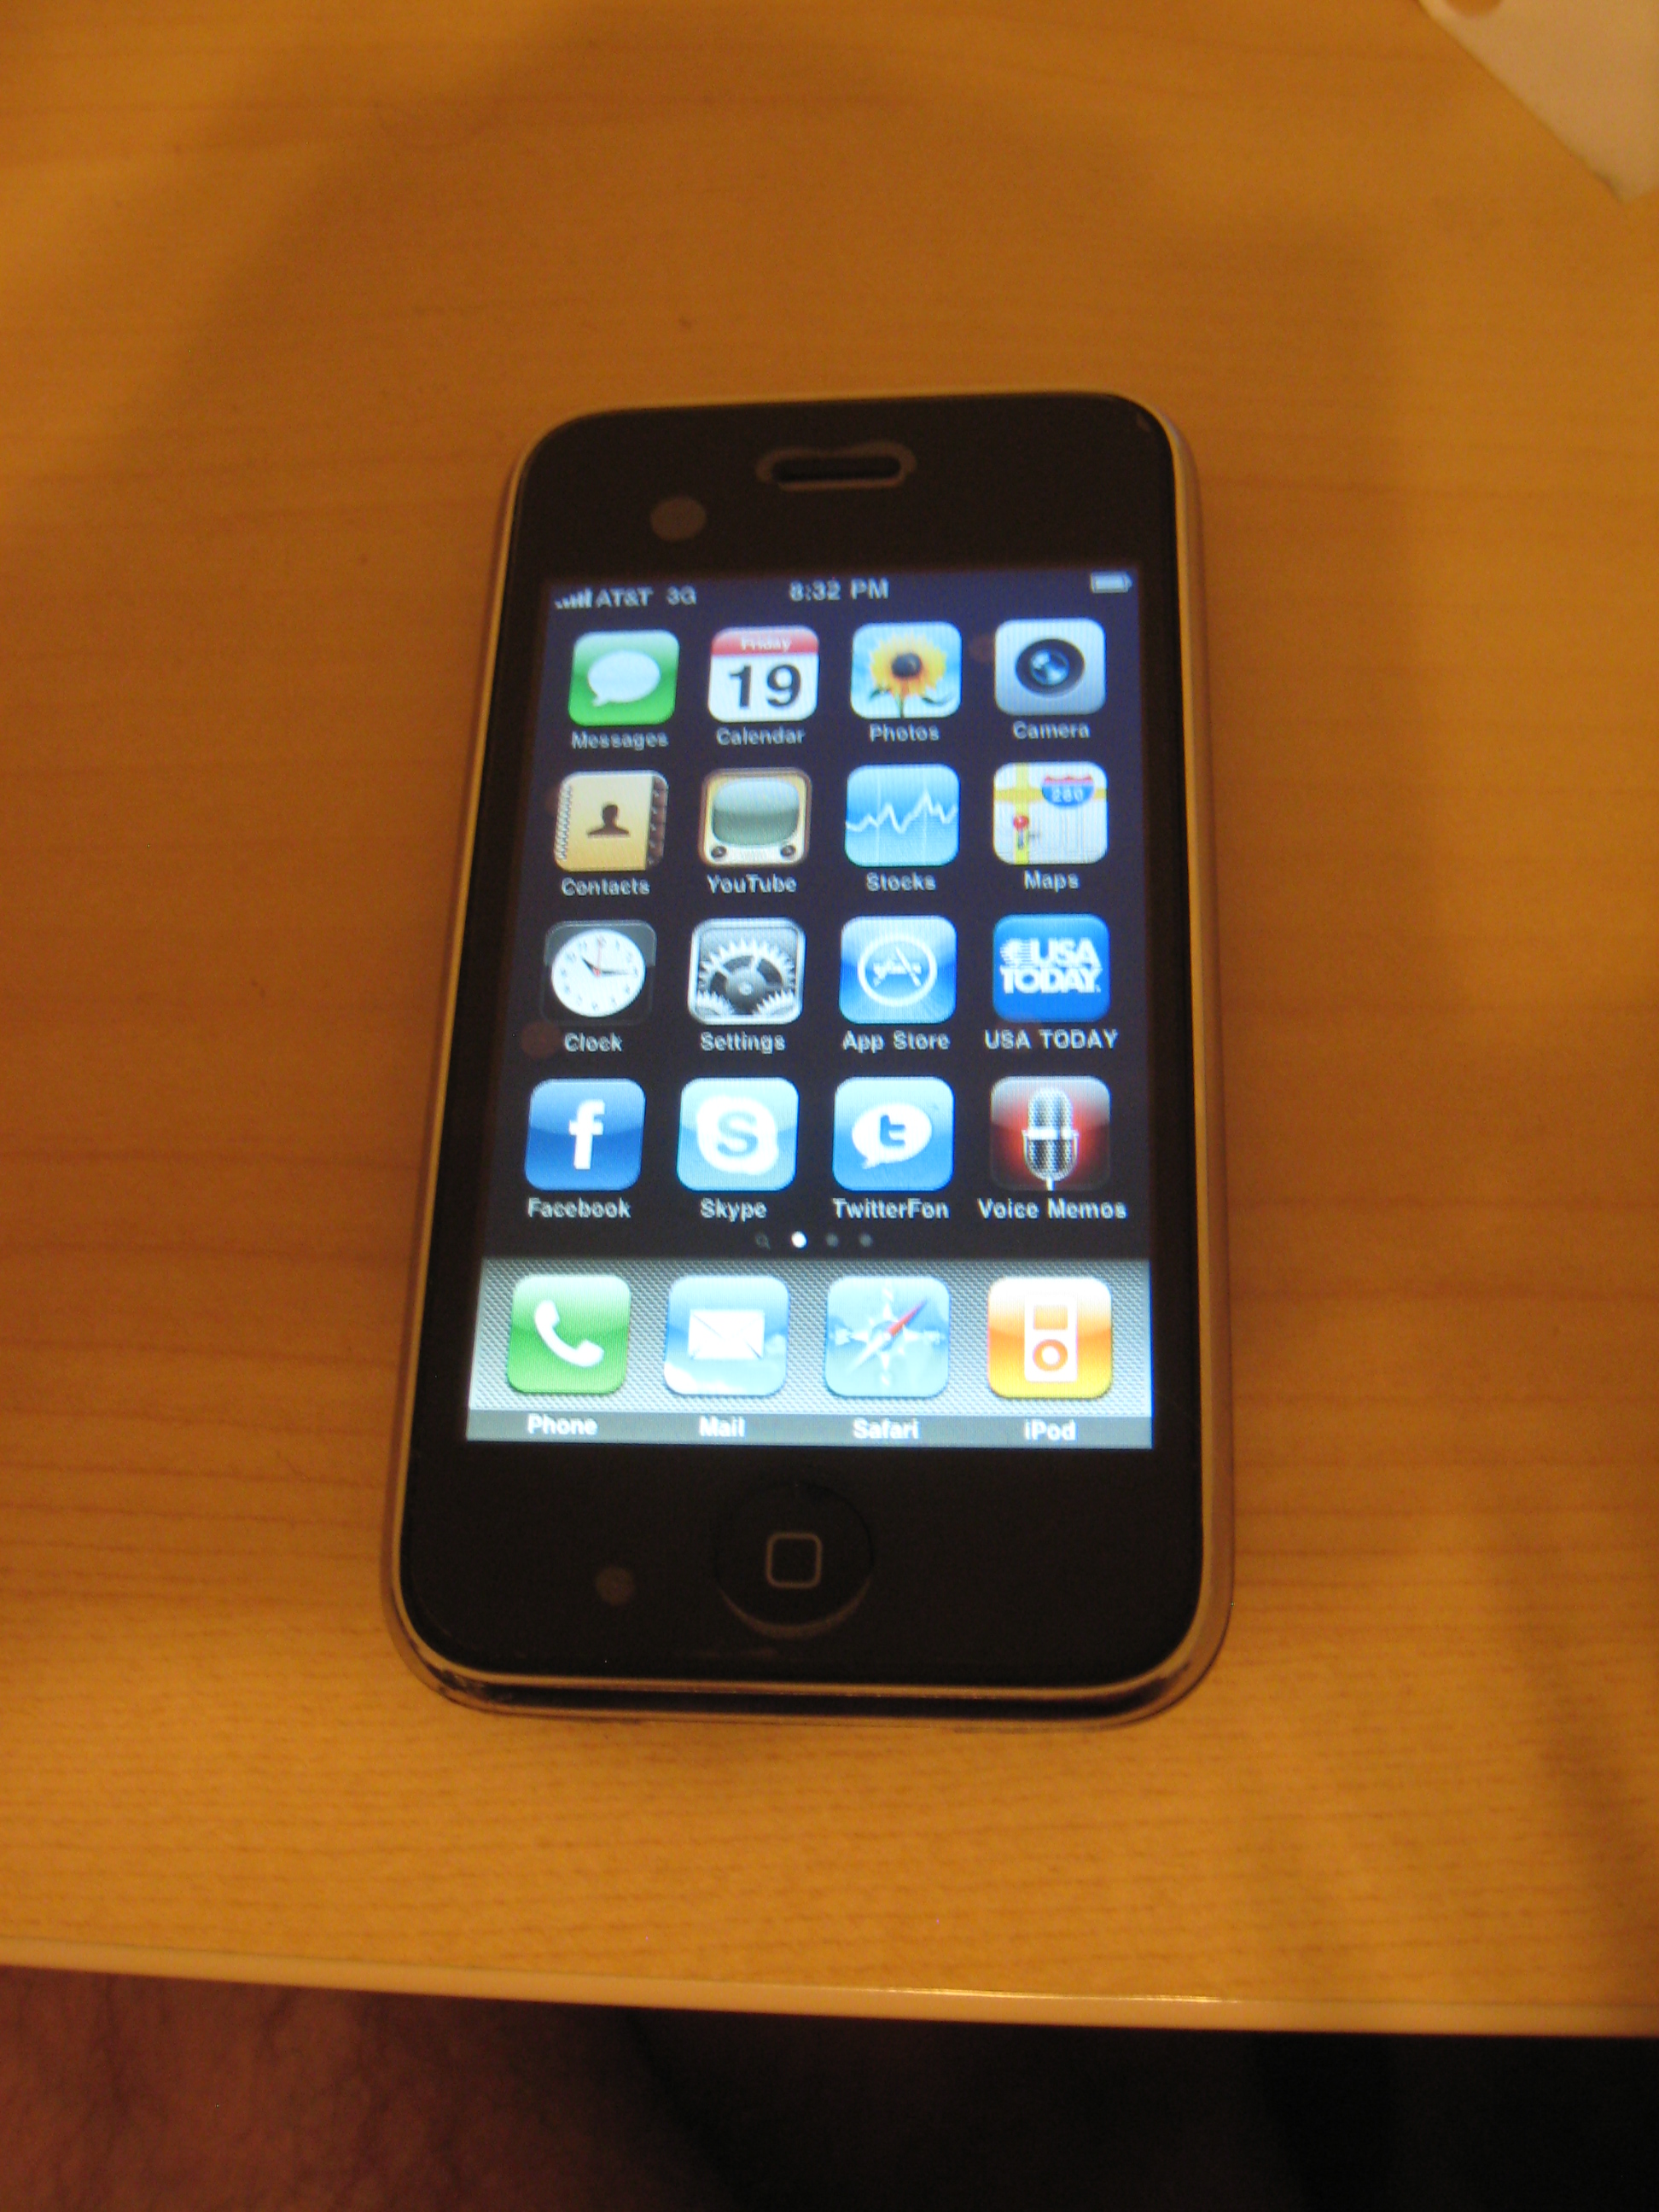 Gambar iPhone 3.0 OS pada iPhone 3G